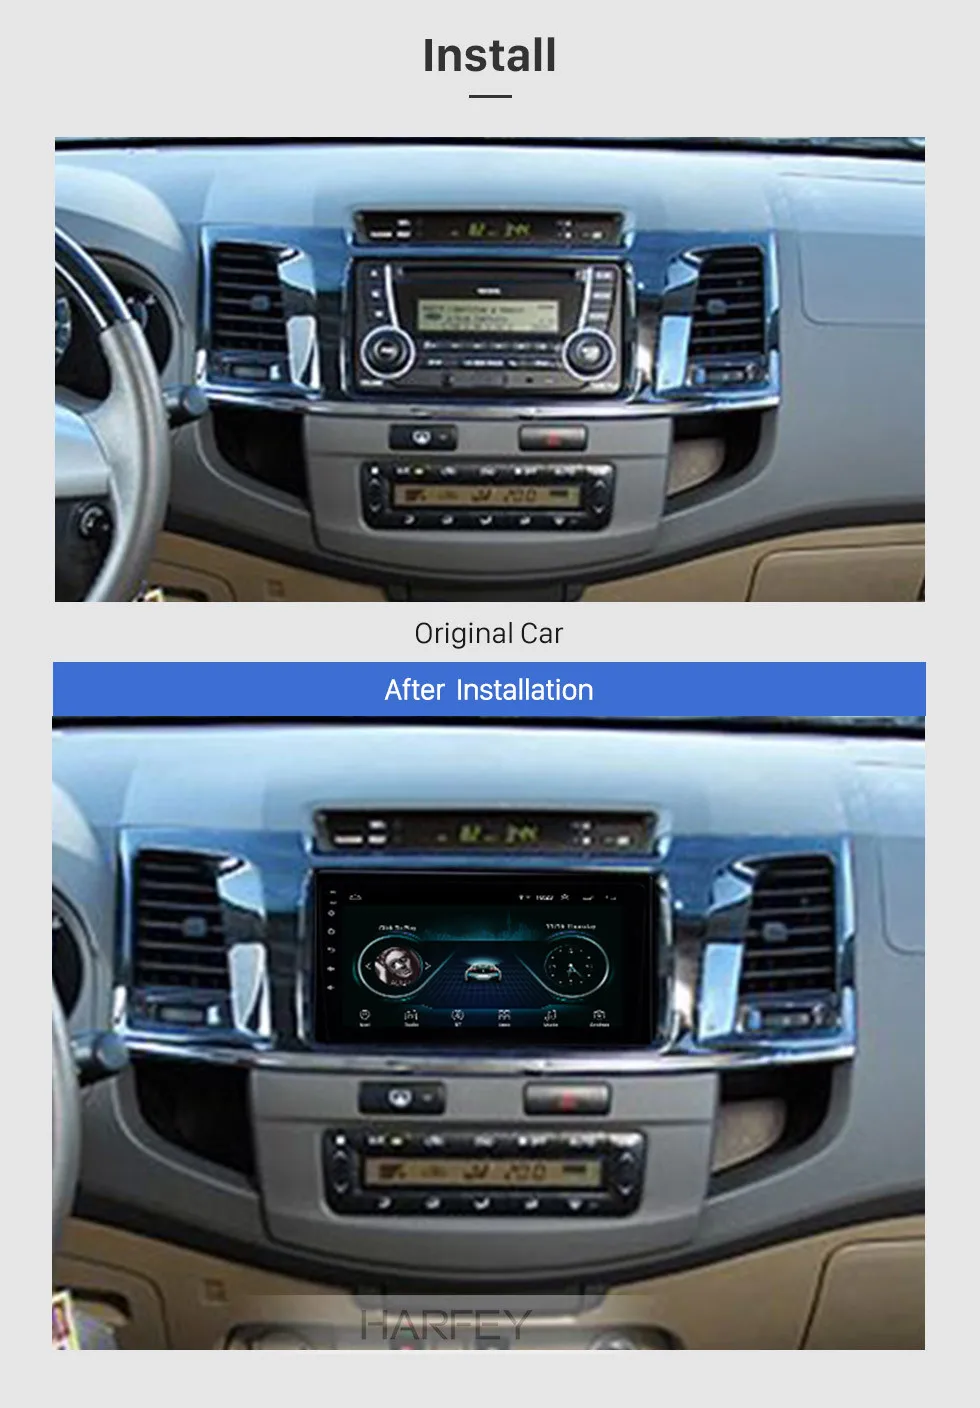 Harfey HD сенсорный экран головное устройство 2din GPS автомобильный радиоприёмник для- TOYOTA FORTUNER/Тайное 9 дюймов Android 8,1 автомобильный мультимедийный плеер